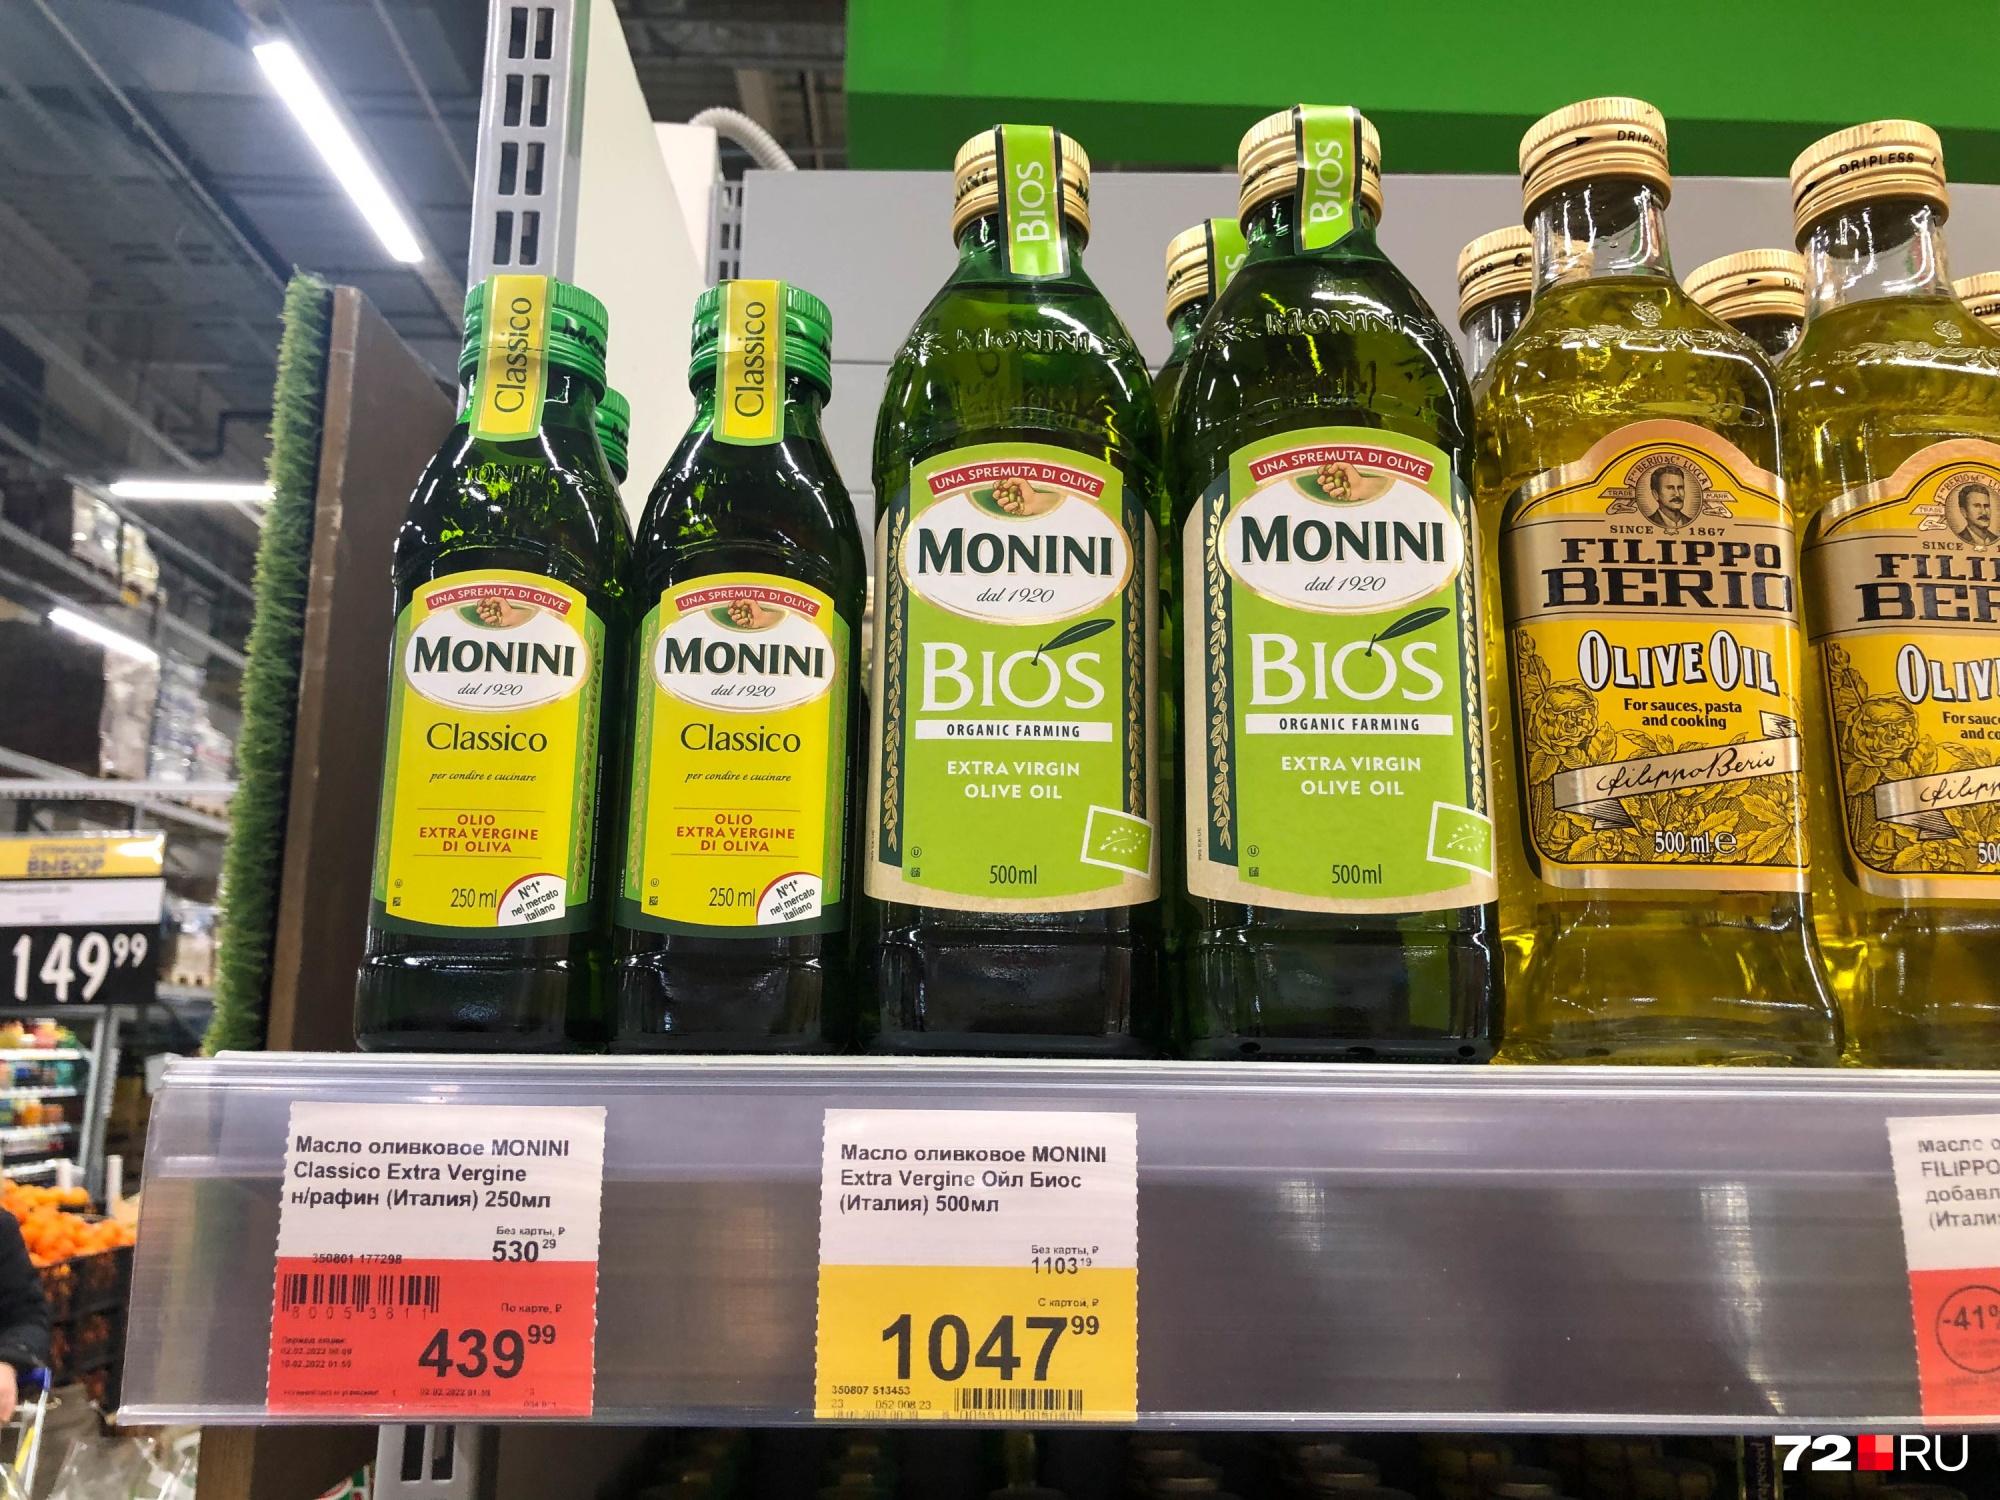 Оливковое масло из Италии значительно дороже. С учетом скидки литр такого продукта стоит больше 2000 рублей